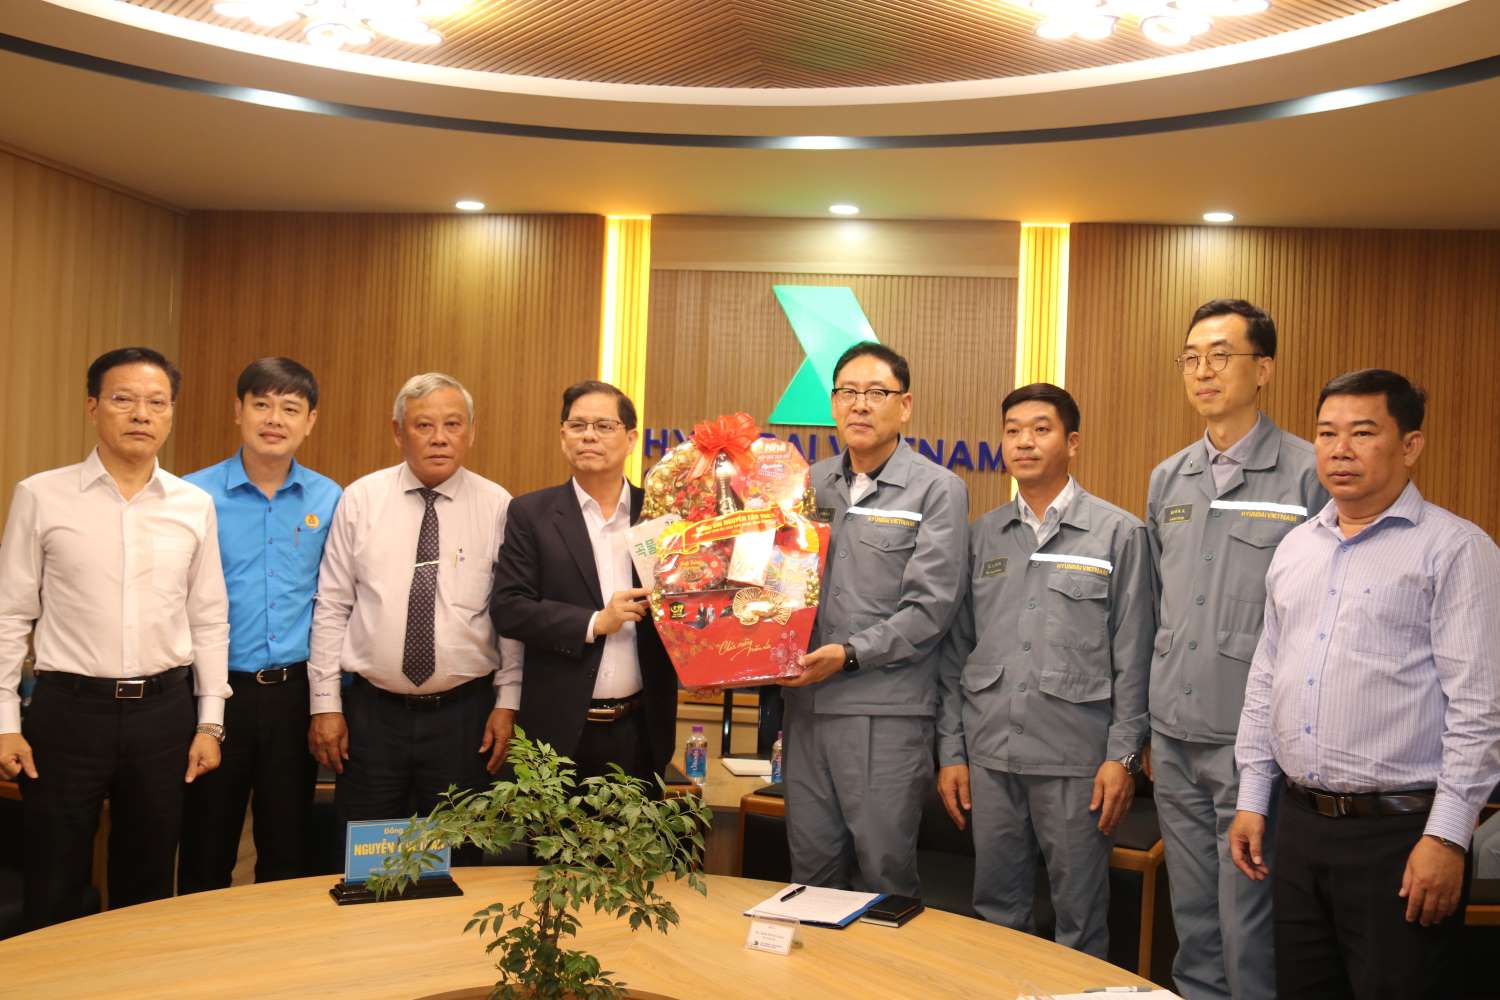 Ông Nguyễn Tấn Tuân- Chủ tịch UBND tỉnh Khánh Hòa và đoàn công tác thăm chúc Tết doanh nghiệp đóng tàu. Ảnh: Phương Linh